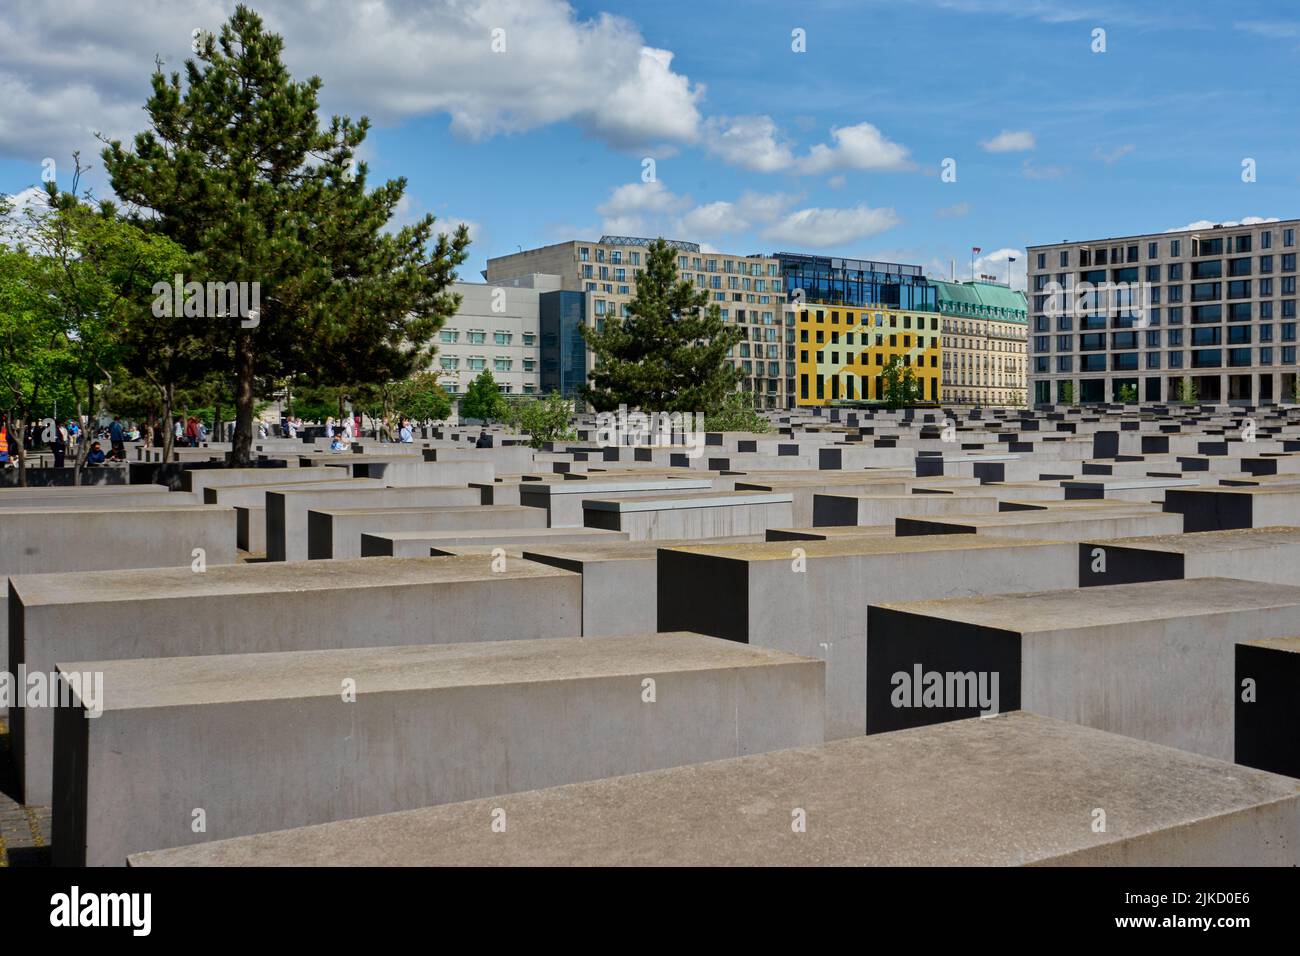 Denkmal für die ermordeten Juden Europas, Holocaust-Mahnmal, Stelenfeld, von Peter Eisenman entworfen, Berlin Mitte, Berlin, Deutschland Stock Photo